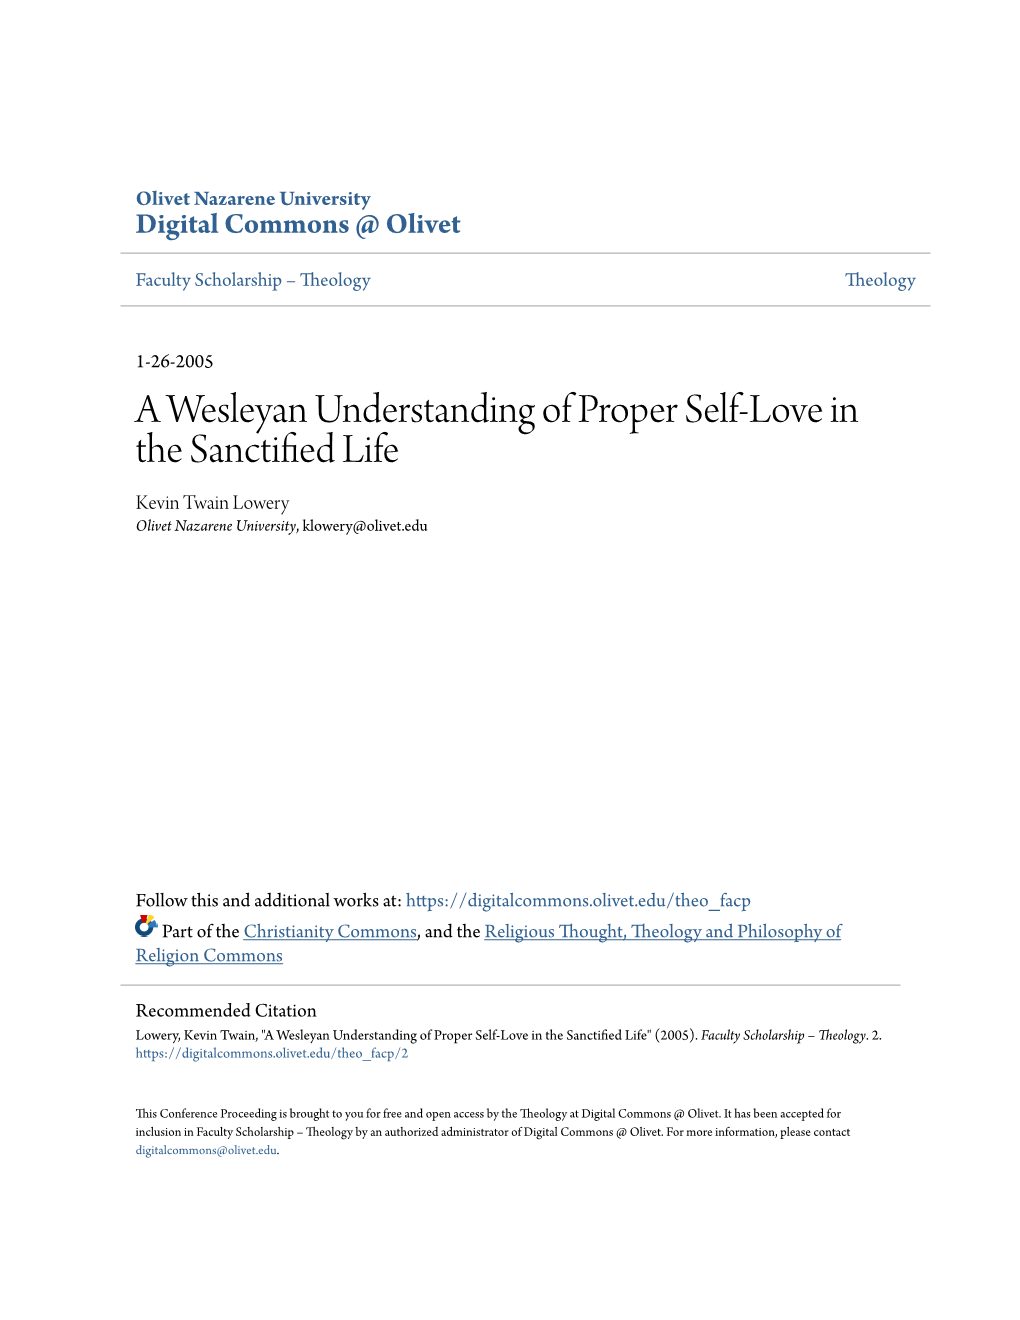 A Wesleyan Understanding of Proper Self-Love in the Sanctified Life Kevin Twain Lowery Olivet Nazarene University, Klowery@Olivet.Edu